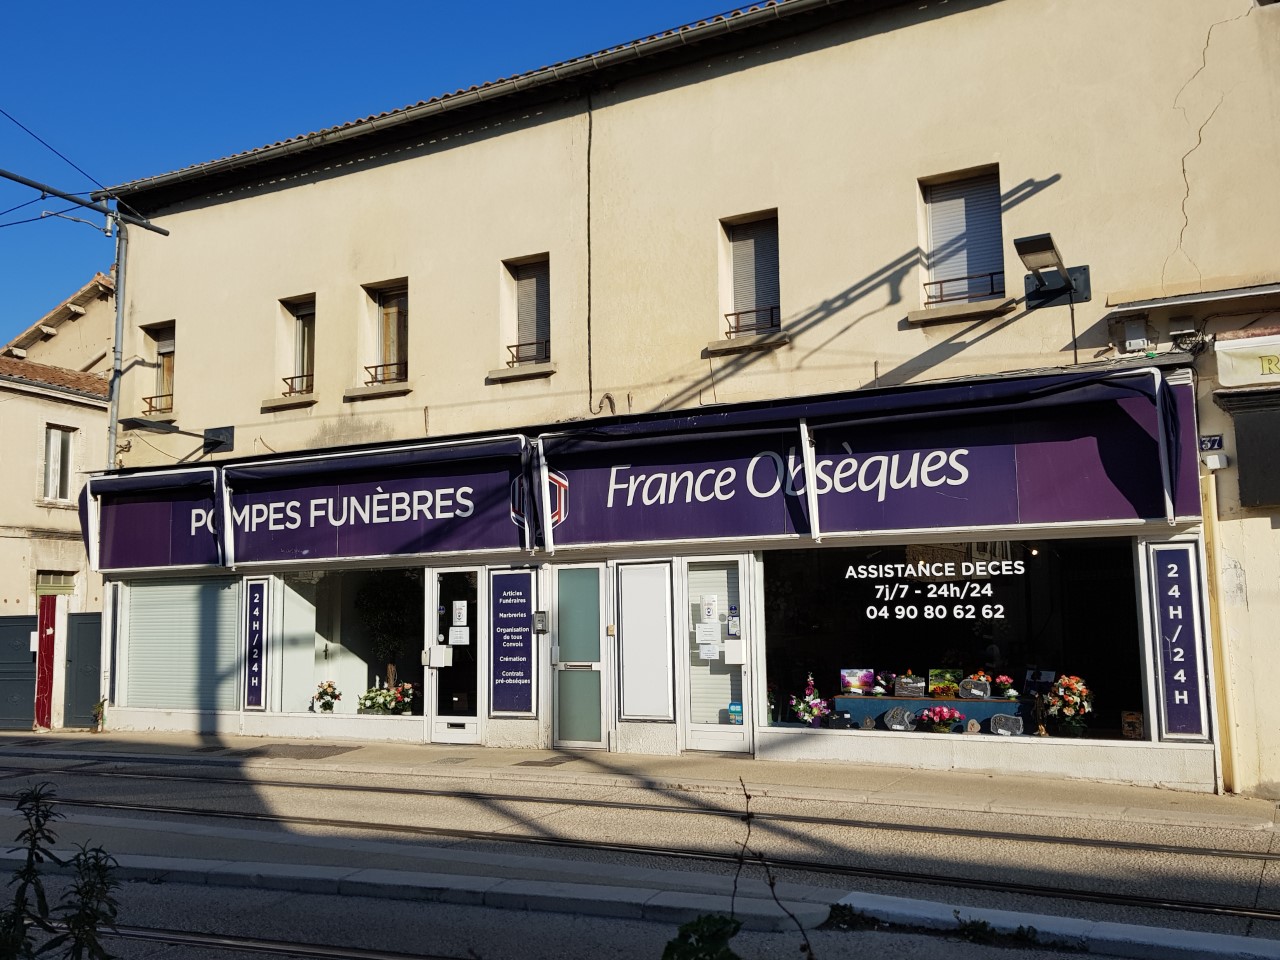 Pompes Funèbres France obsèques - Avignon - St Ruf 